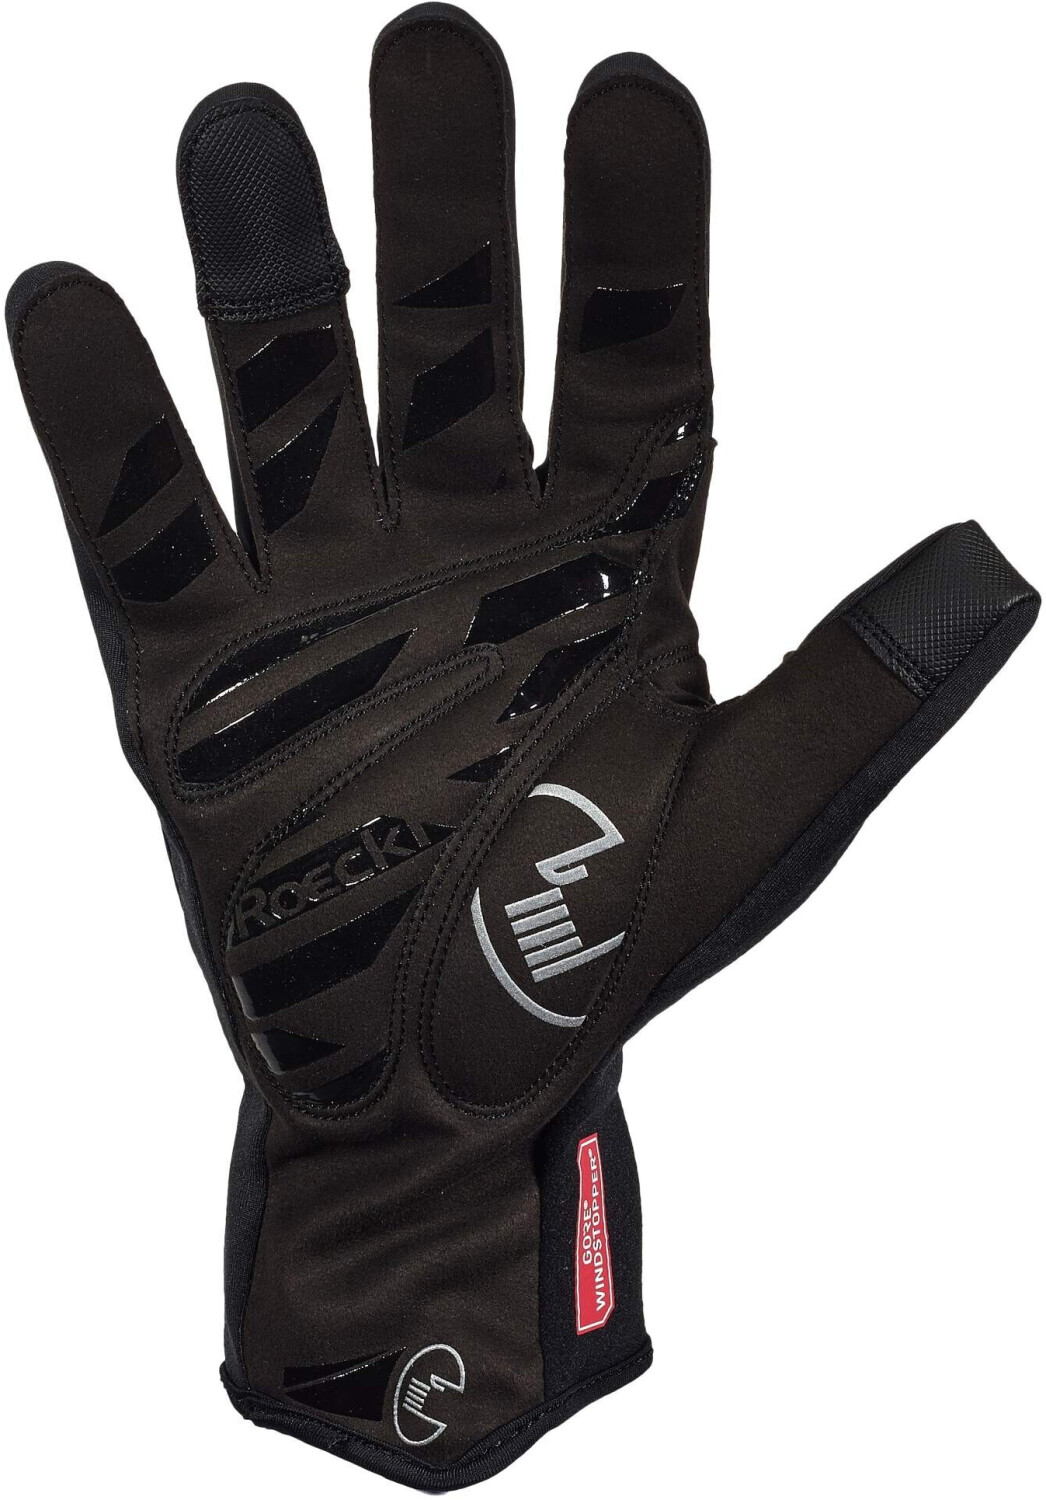 Preisvergleich grau/black/gelb ab 4.0 Dark Gloves € Wowow 39,95 reflektierend bei Wowow |